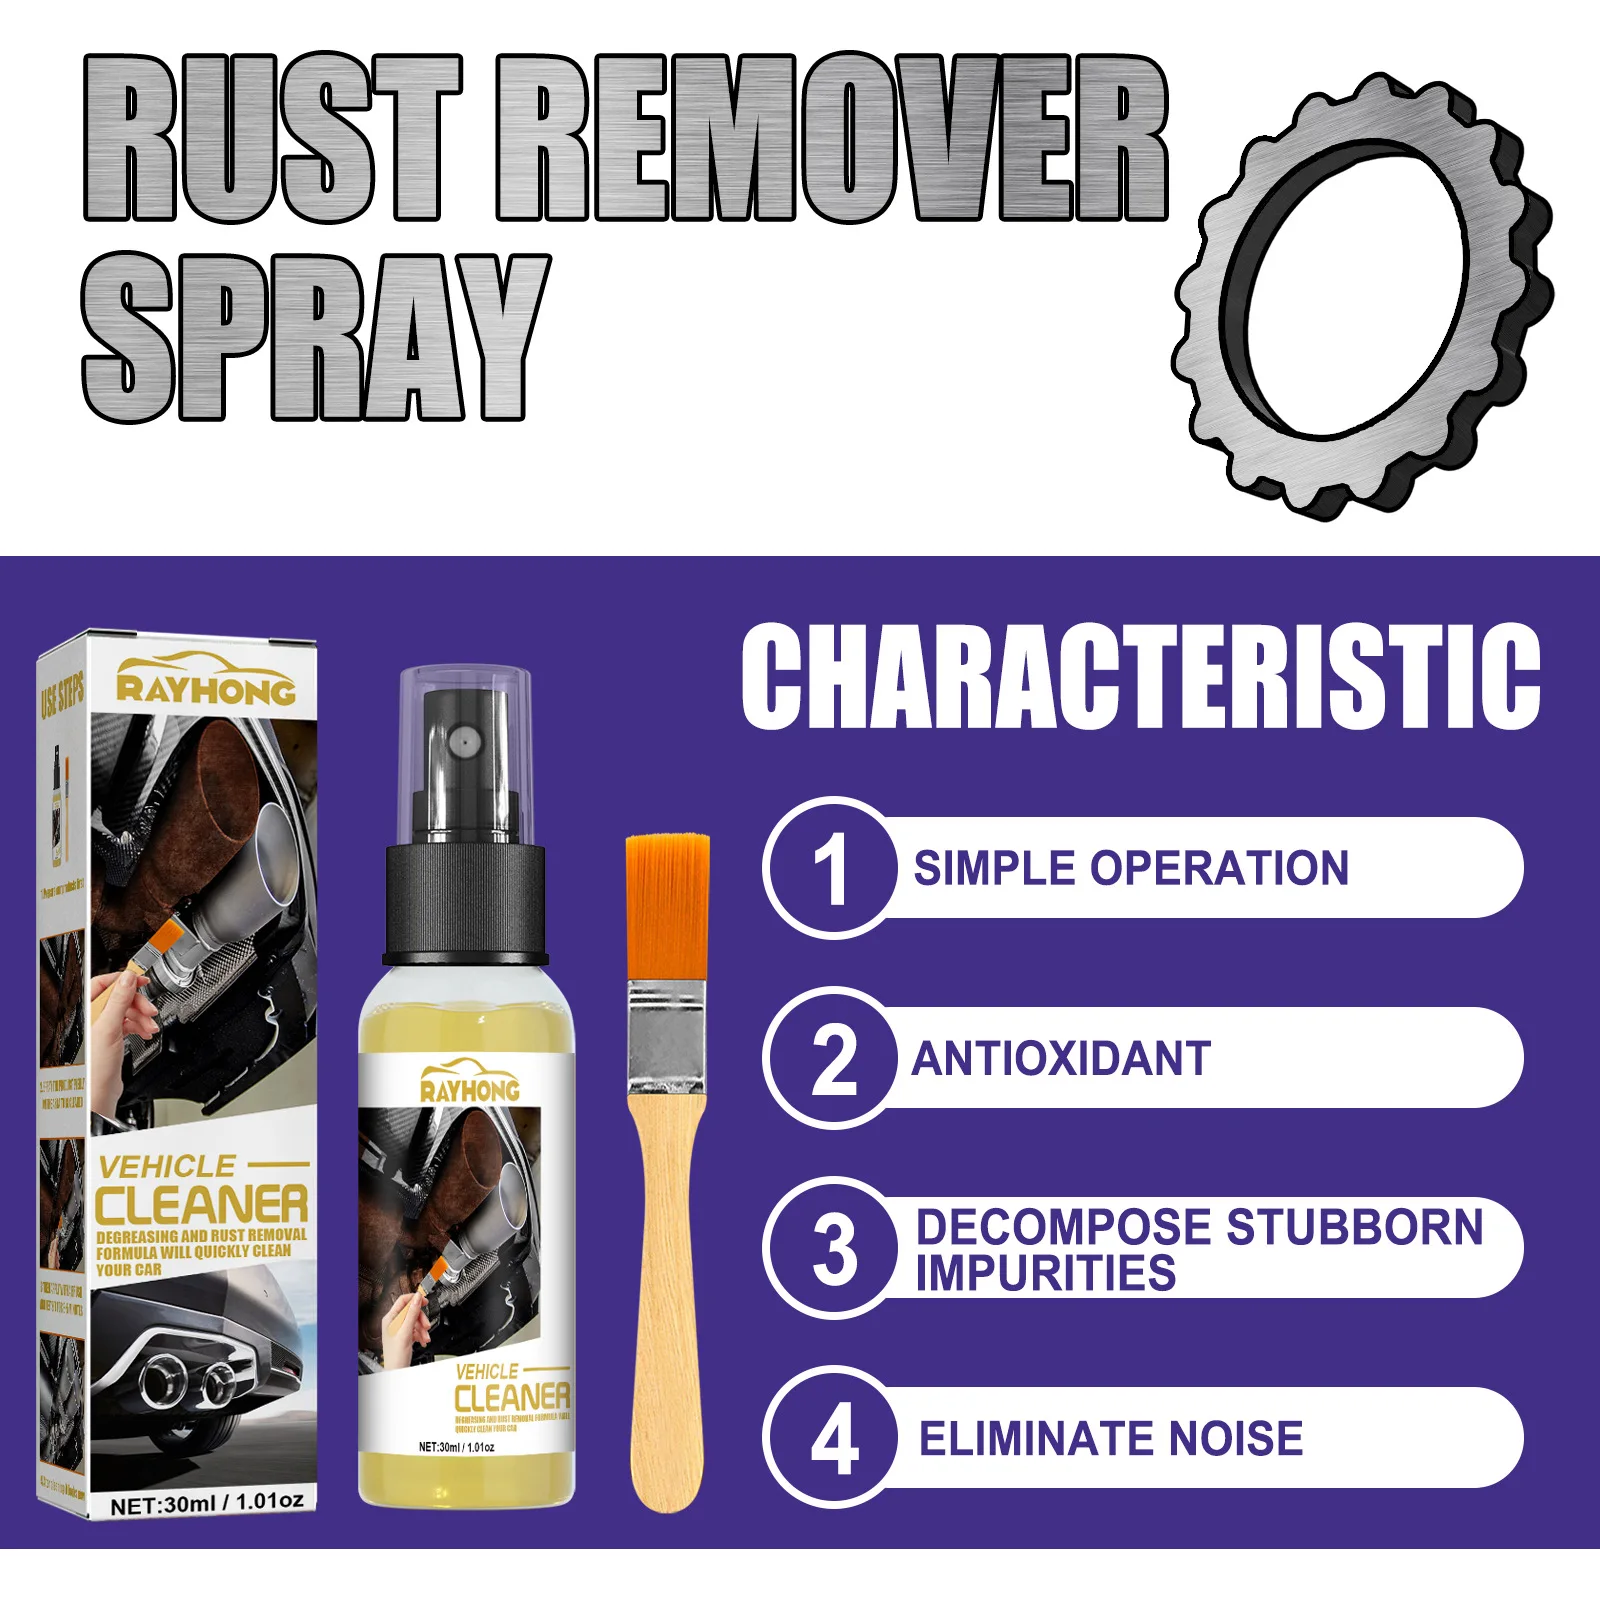 Rust cleaner spray как пользоваться фото 13